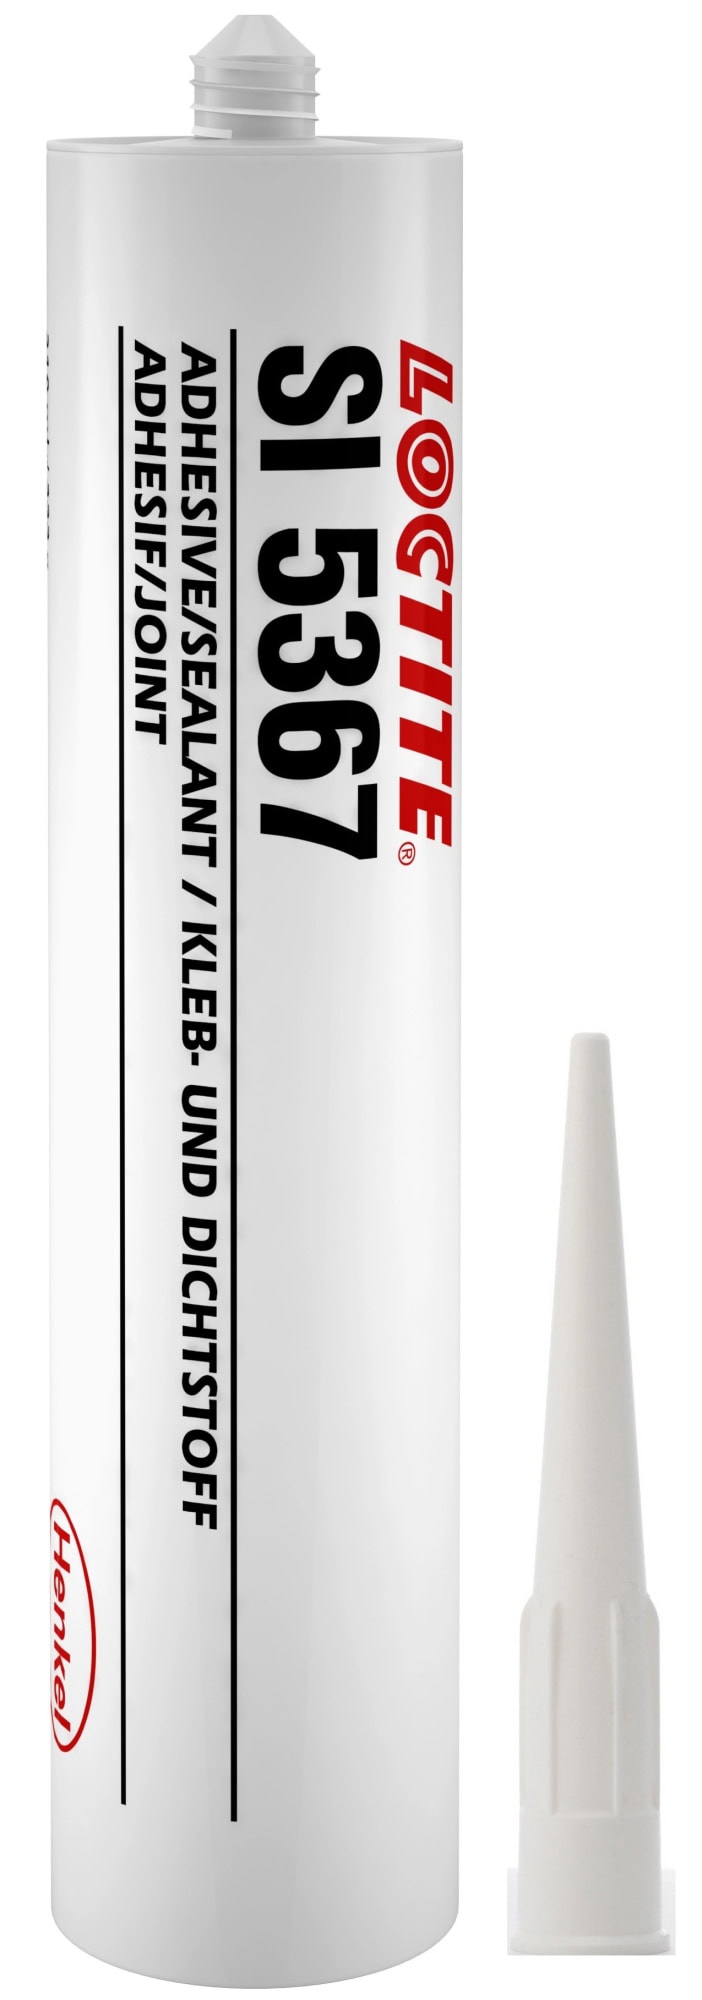 Henkel™ Loctite­­­® Acetoxy Silikon Kleb und Dichtstoff SI 5367, 310 ml, Weiß, Fließend, 1K, 2063297, Für universelle Anwendungen